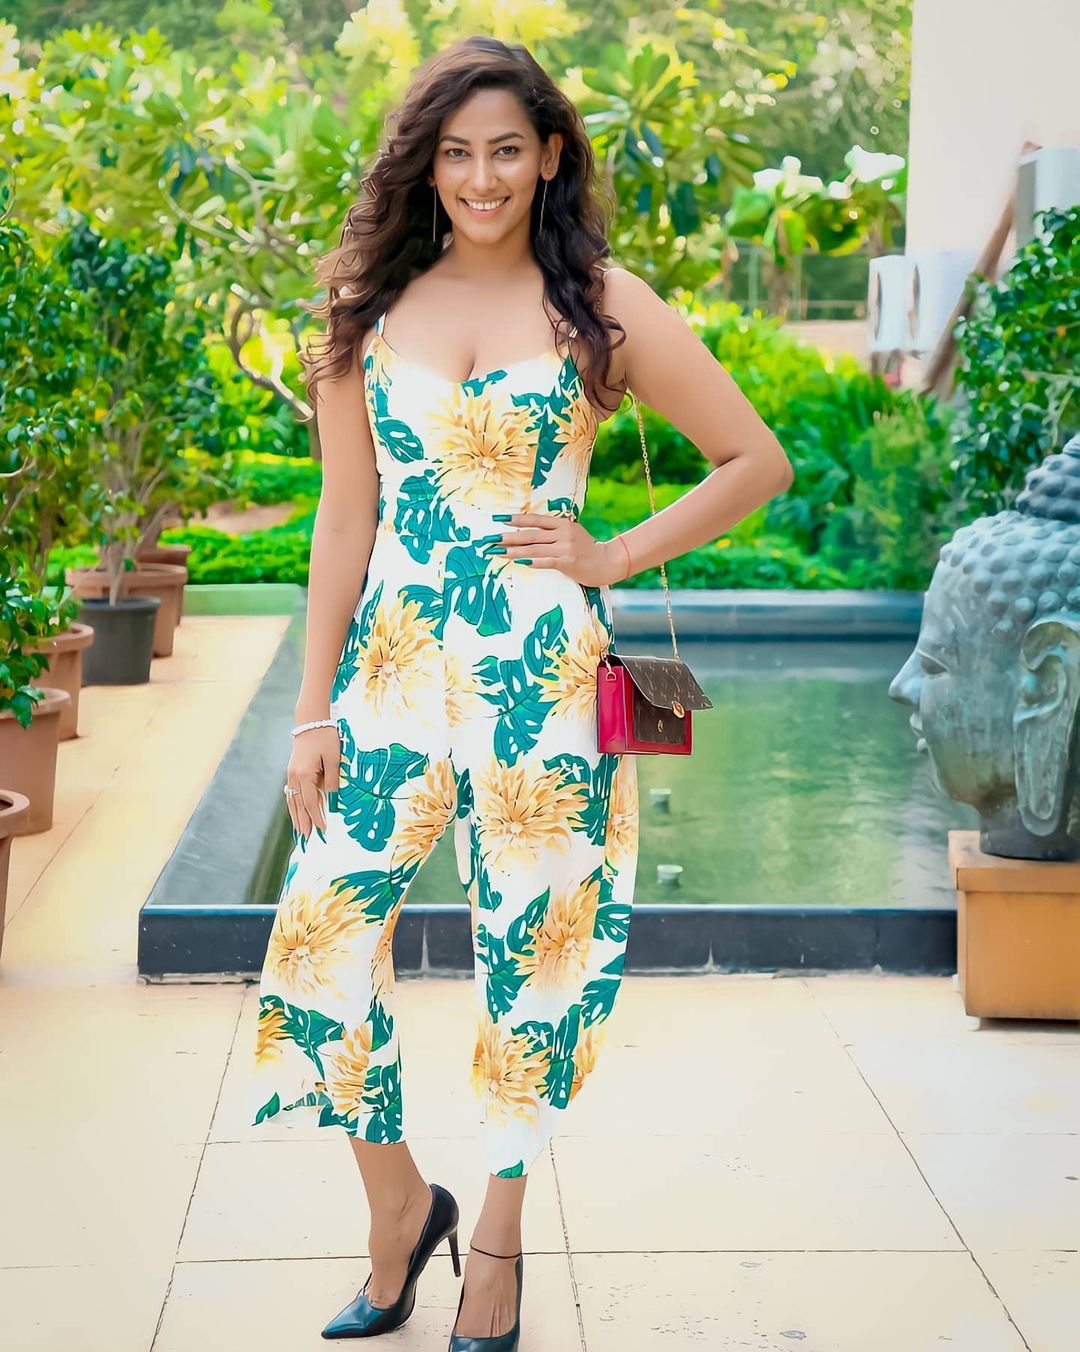 Sanjana Singh in Bikini - TeluguBulletin.com